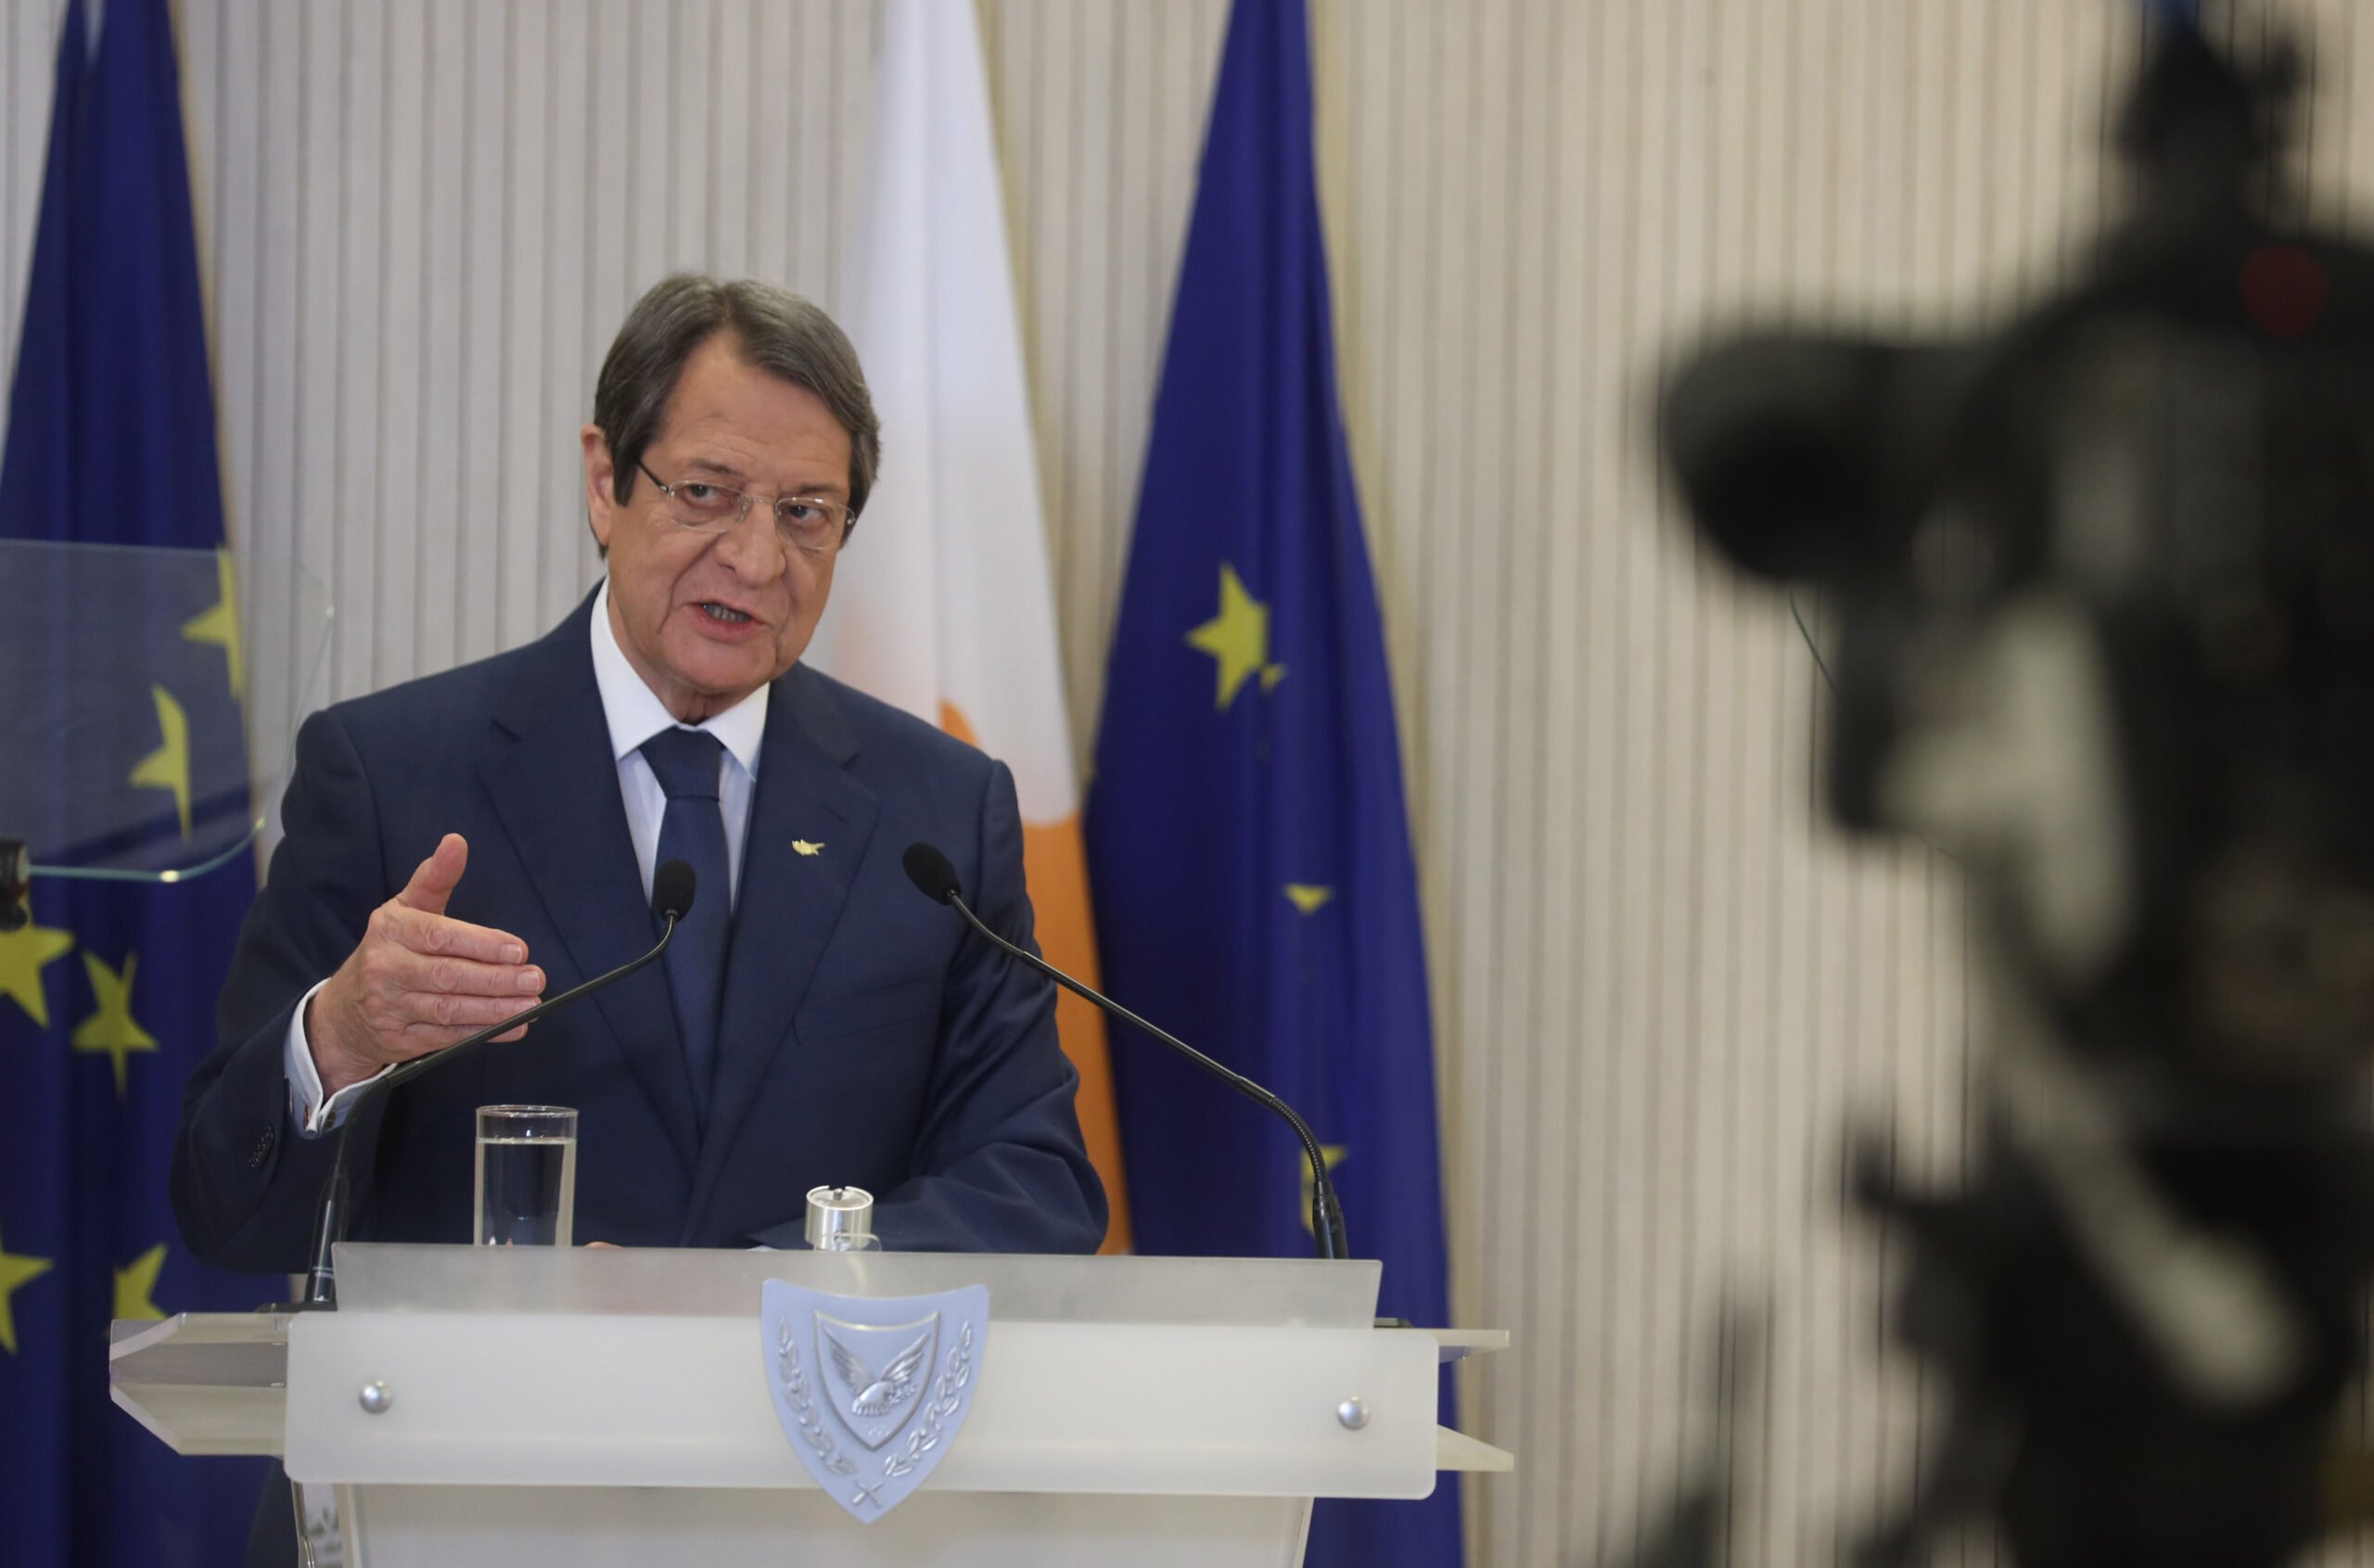 Ο Πρόεδρος εκφράζει την ετοιμότητα να συνεργαστεί με πραγματική πολιτική βούληση στη Γενεύη